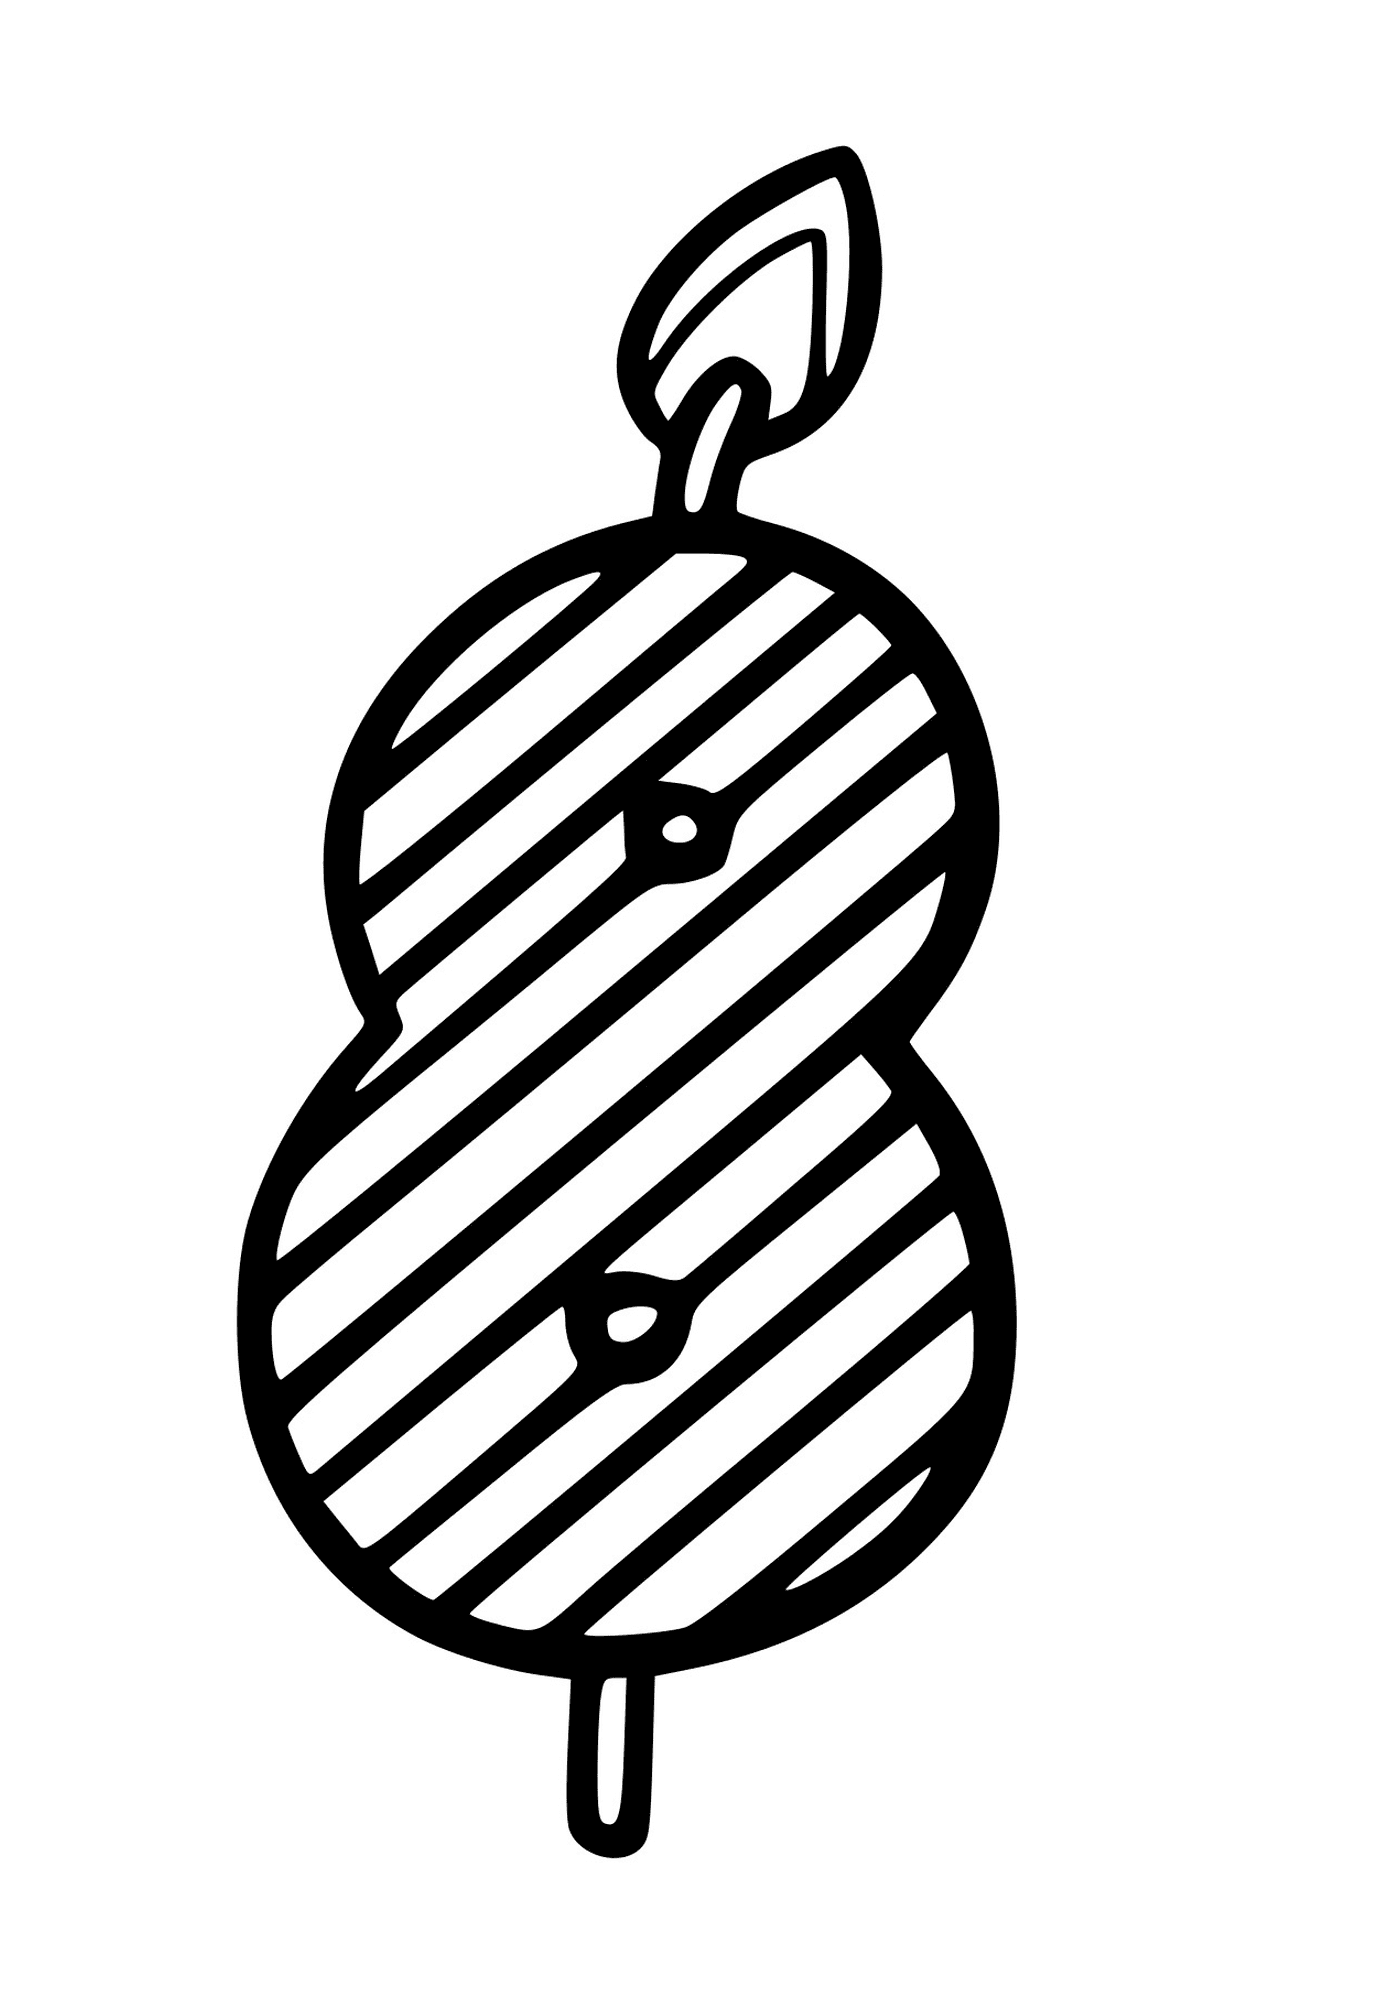  A pear 